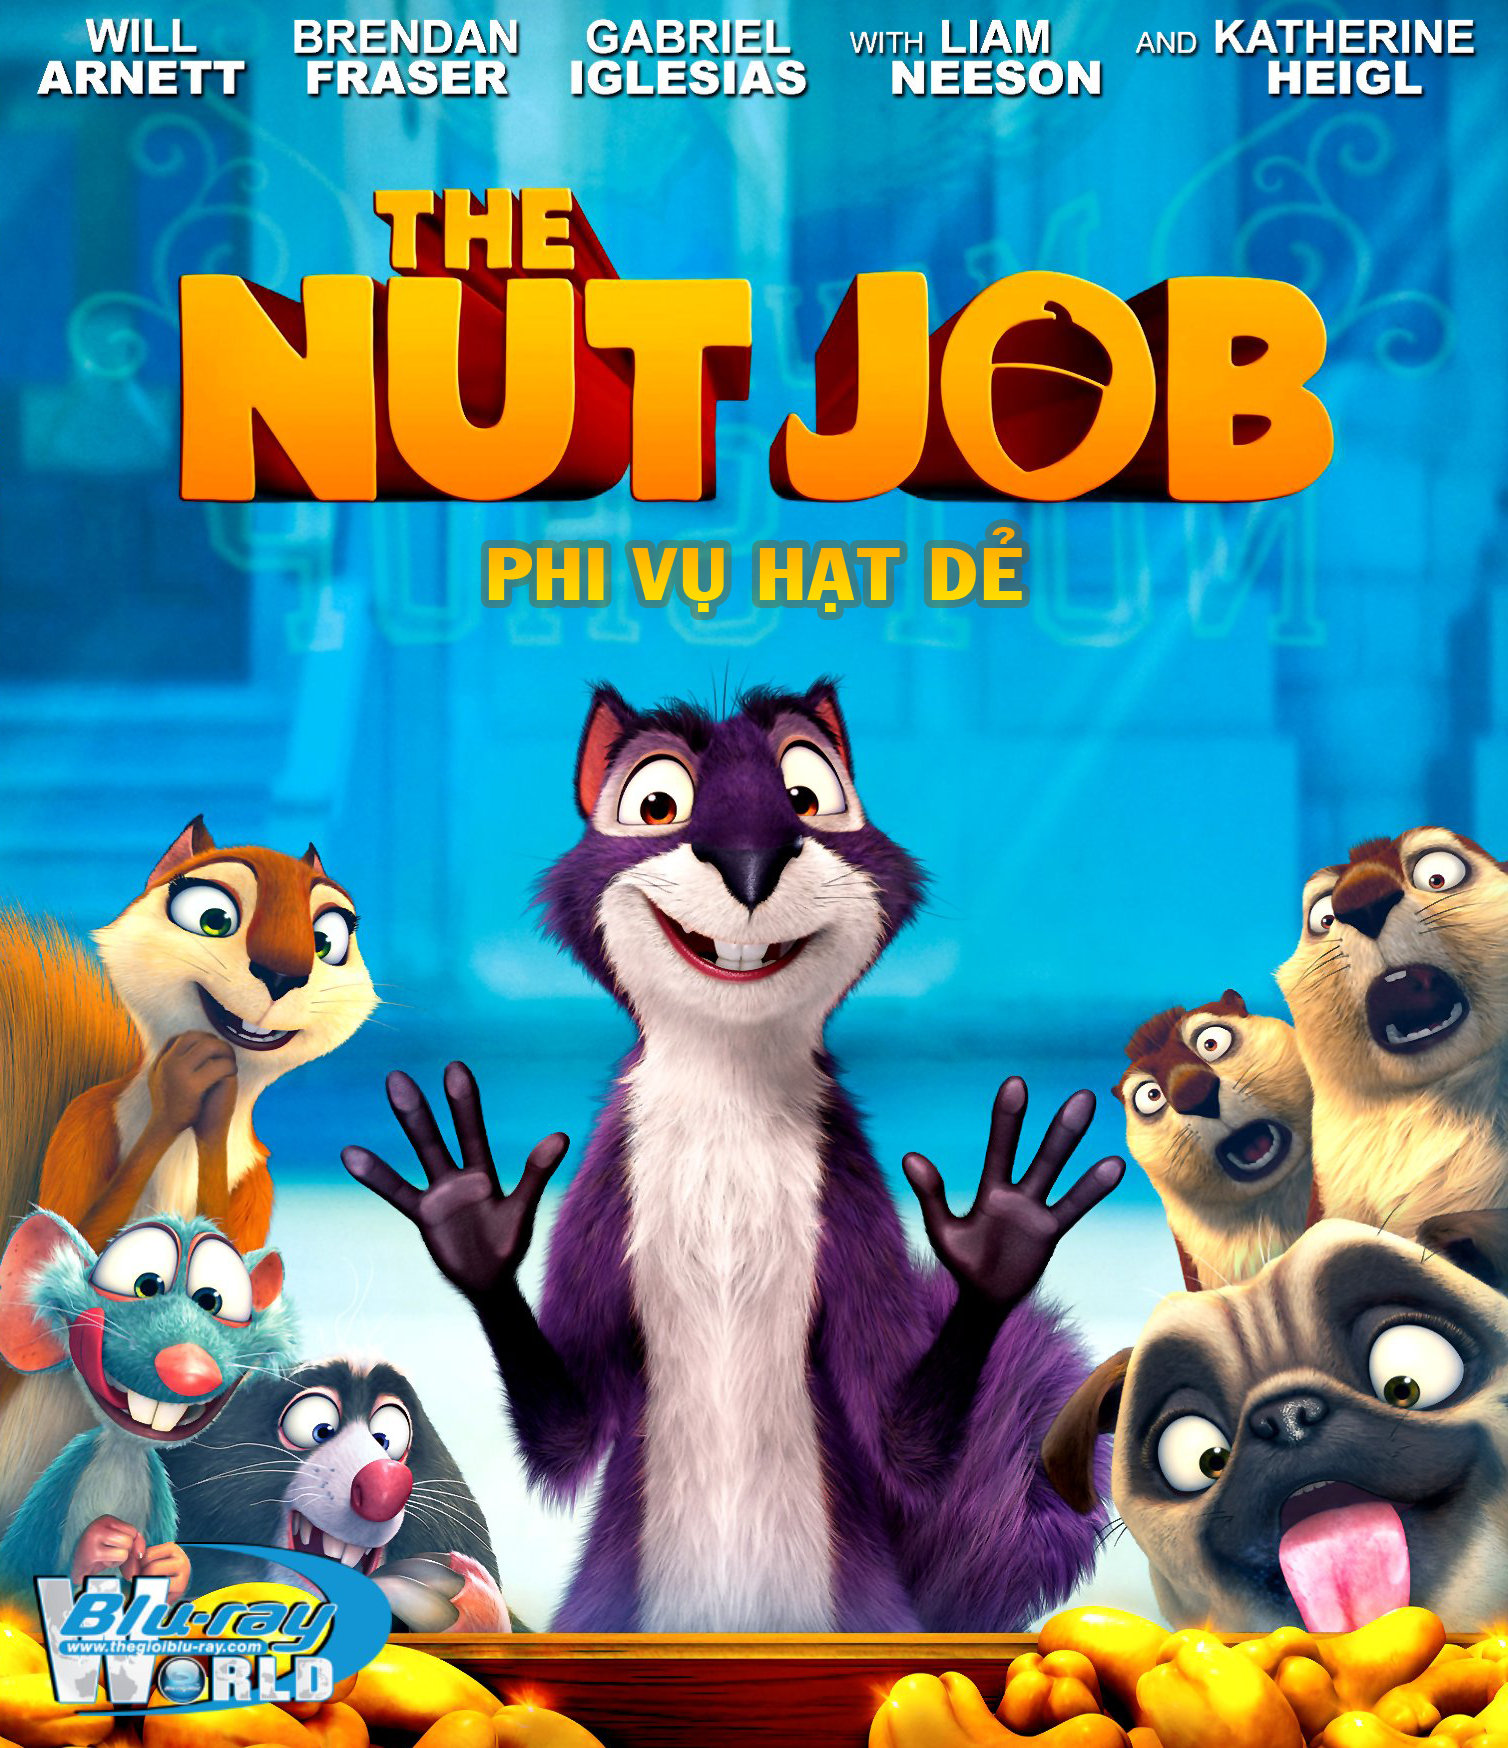 B1698. The nut job - PHI VỤ HẠT DẺ 2D 25G (DTS-HD MA 5.1)